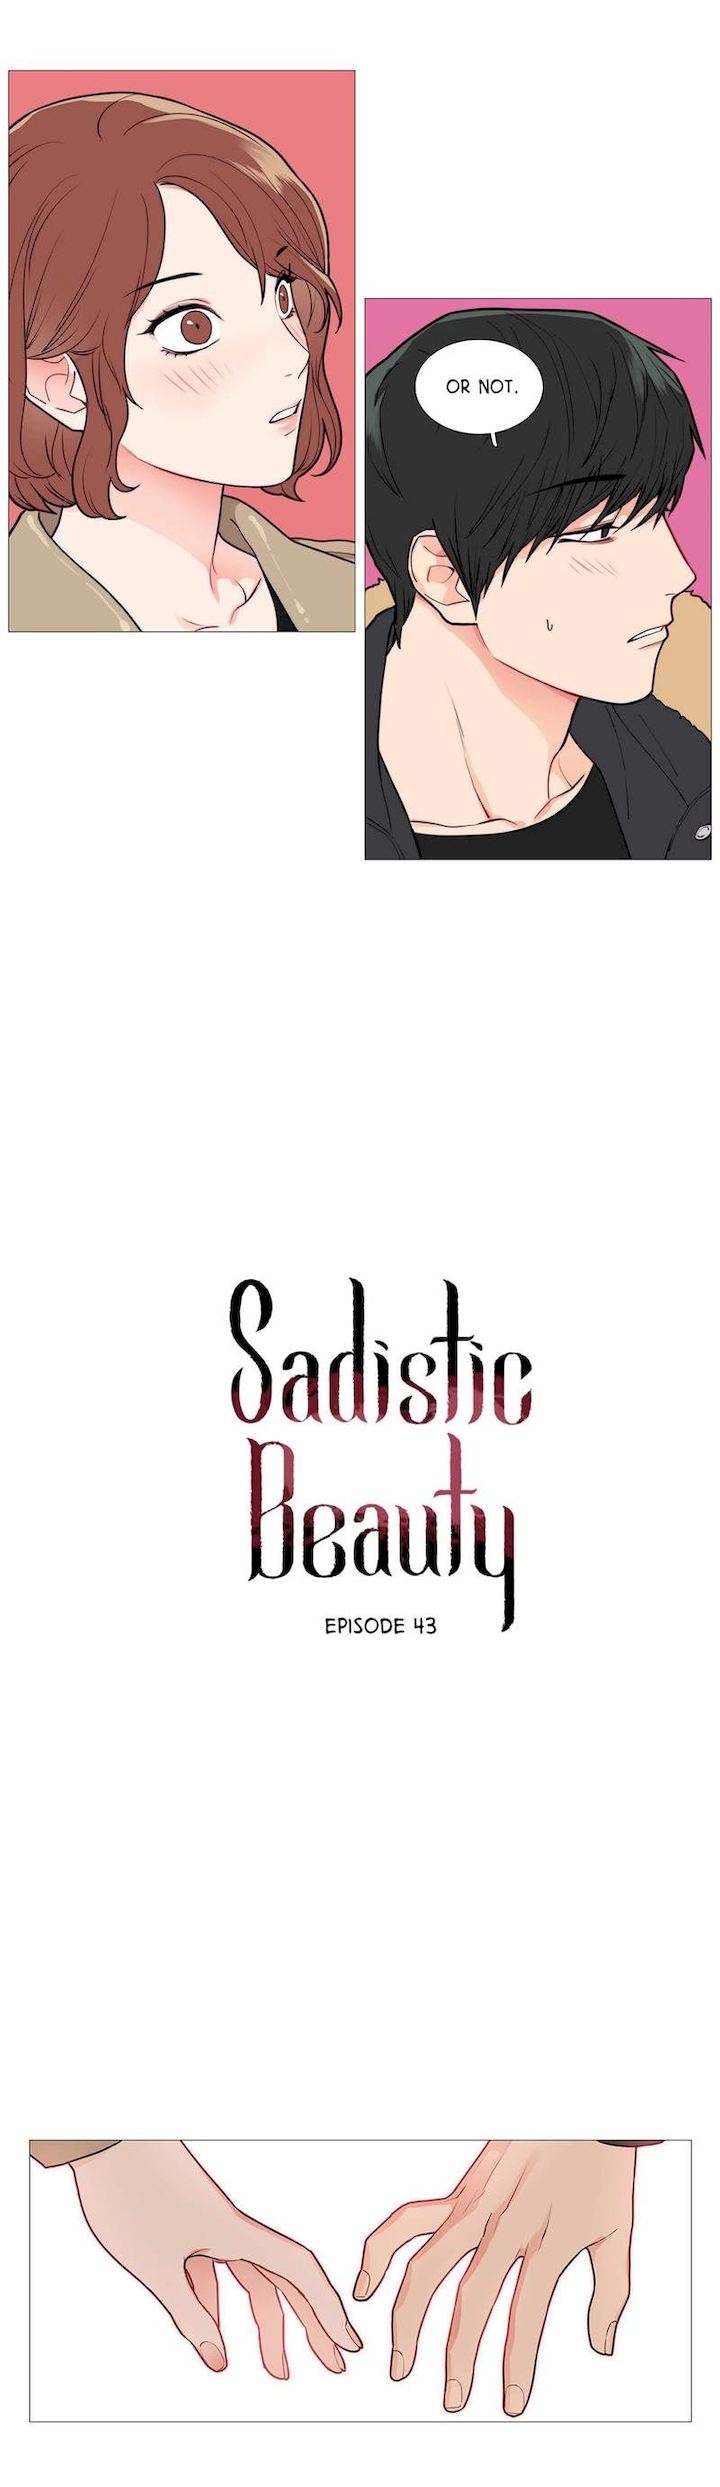 Watch image manhwa Sadistic Beauty - Chapter 43 - EEZTmNiulDlKhU2 - ManhwaXX.net